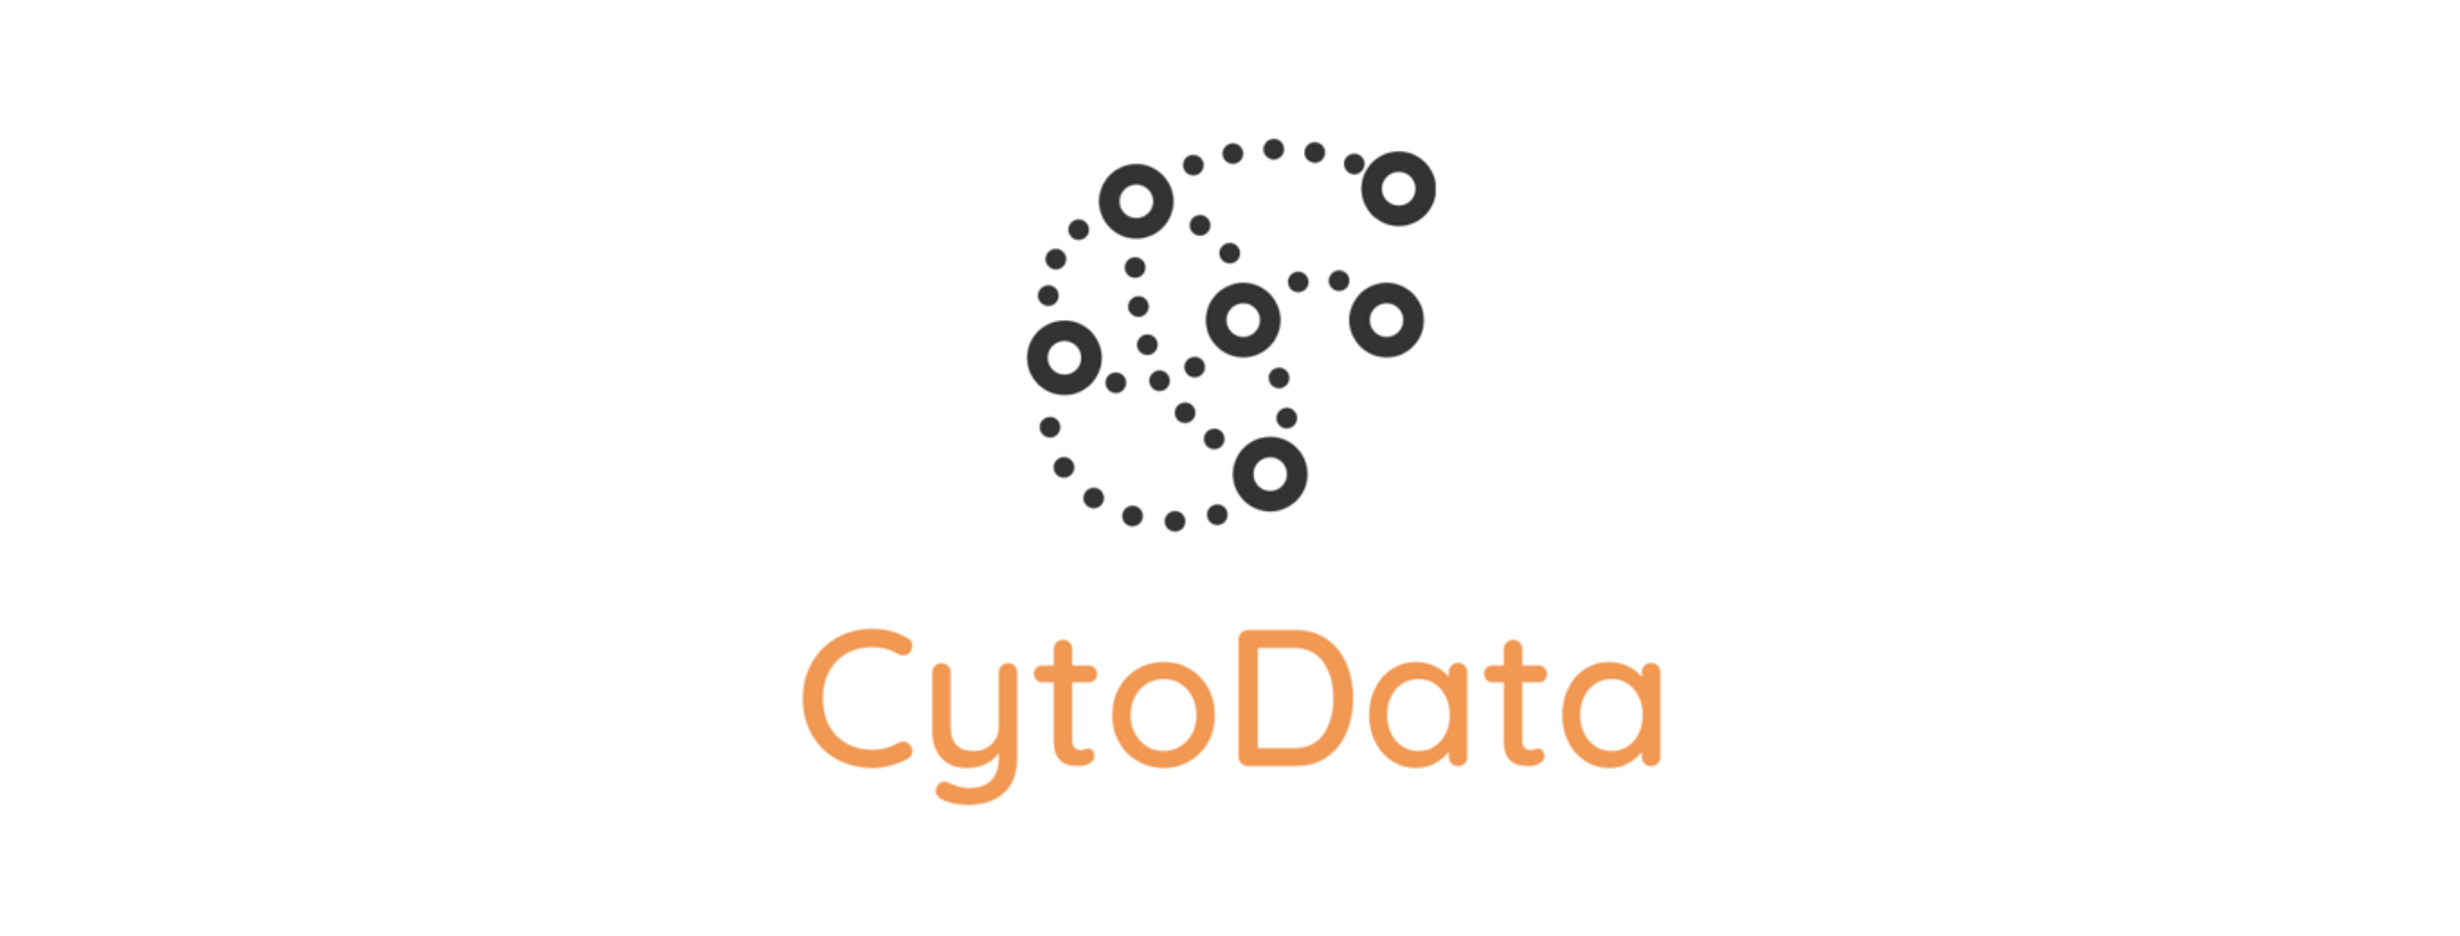 cytodata logo